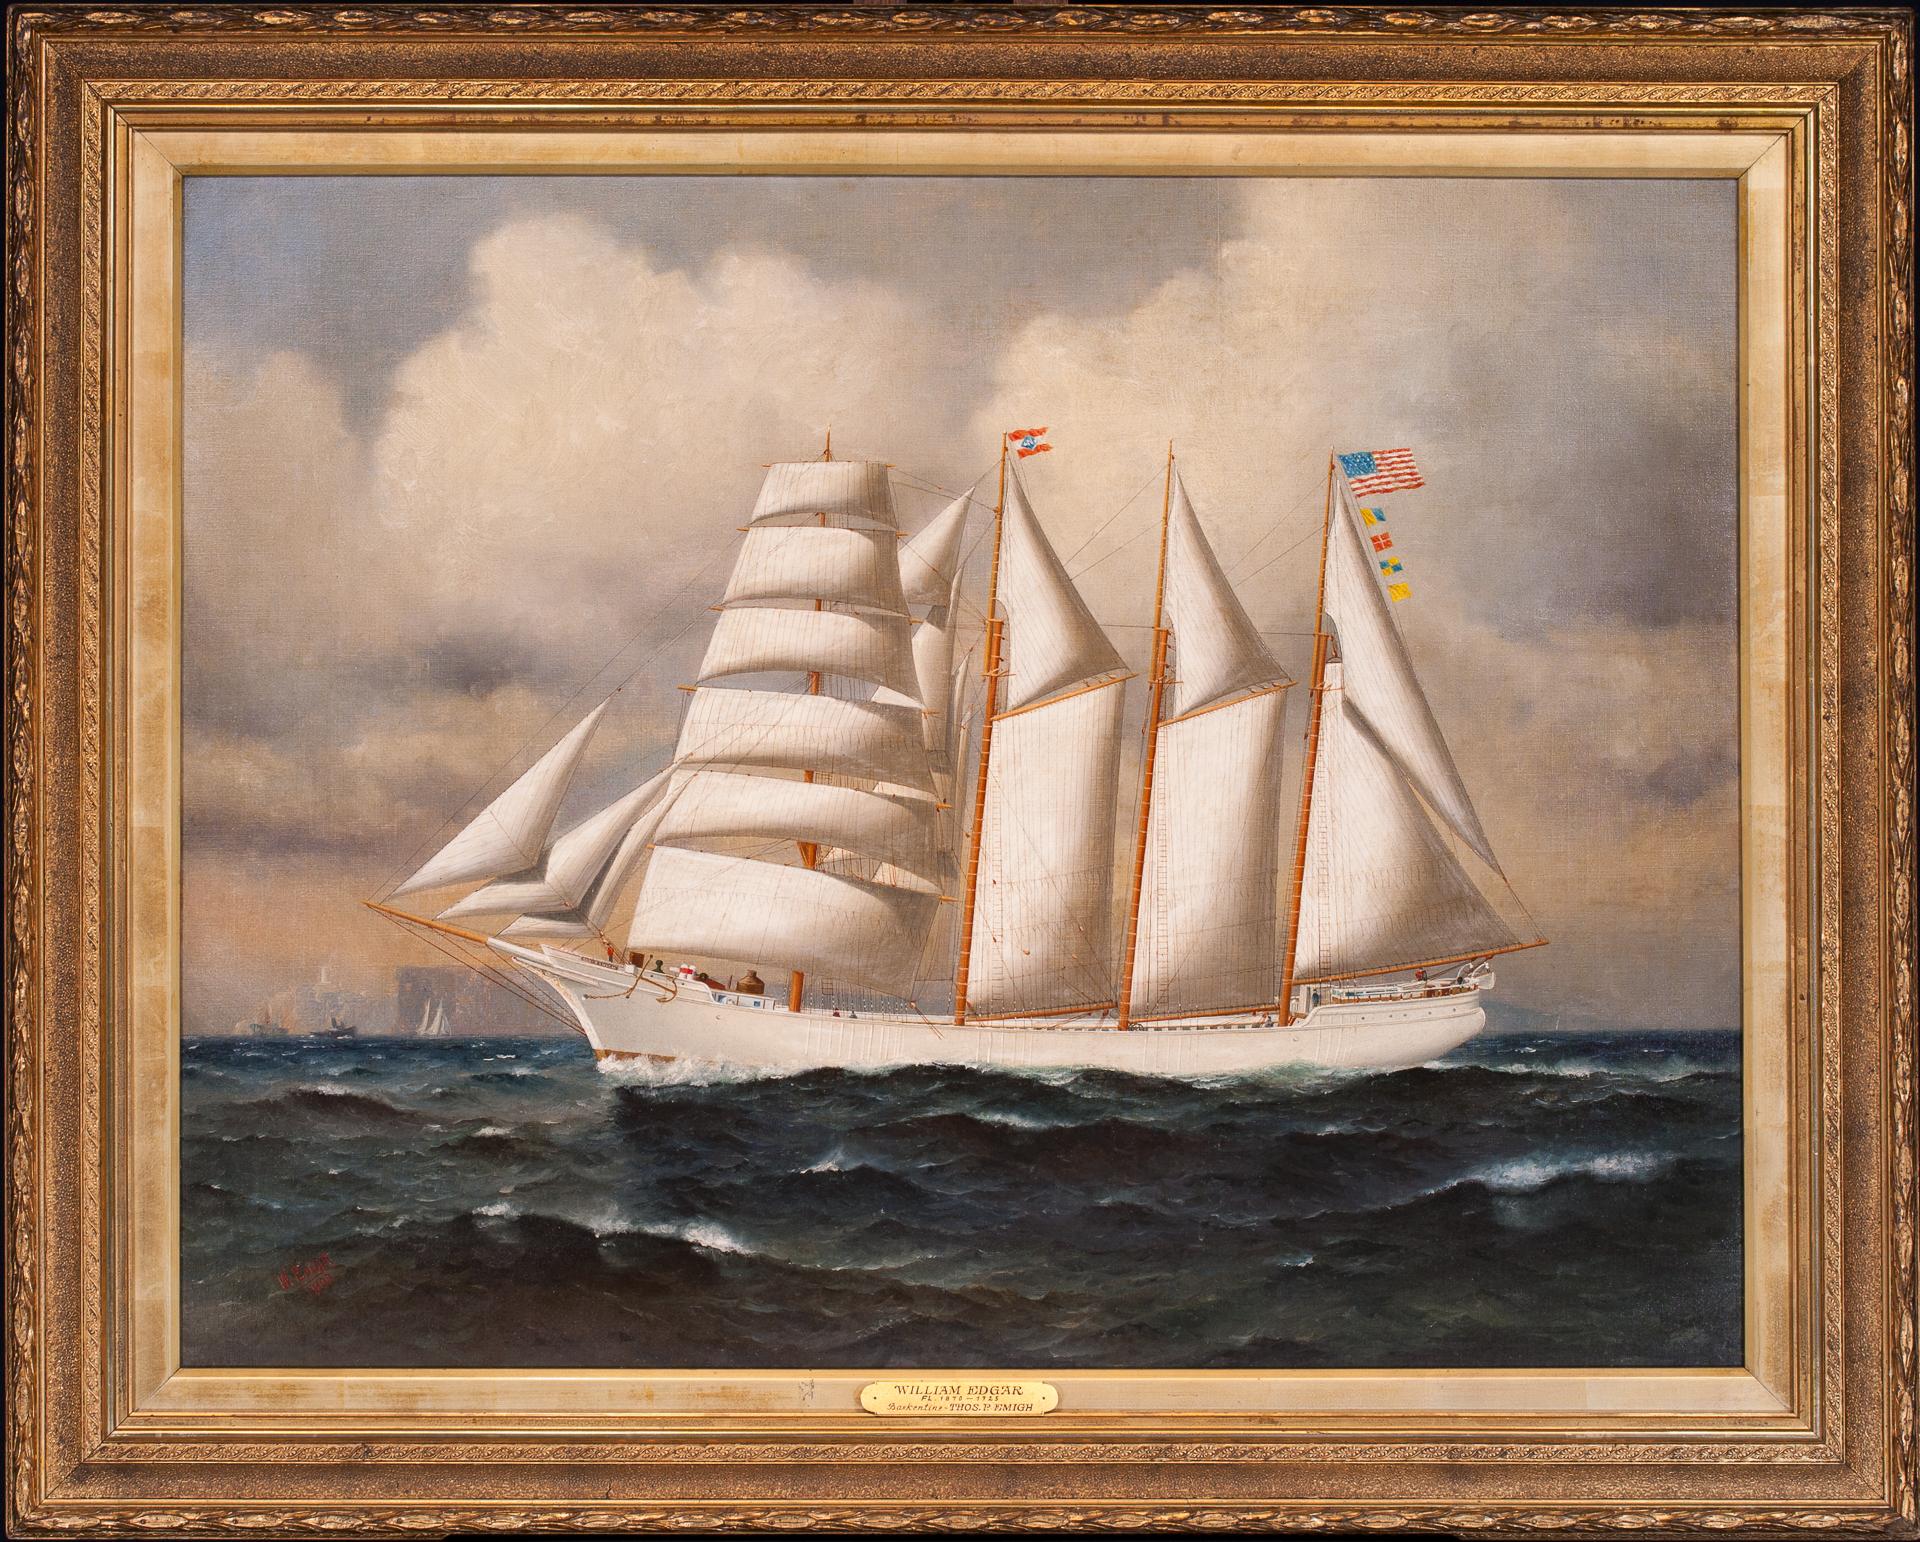 Barkentine THOMAS P. EMIGH mit Fotos und Ephemera (Amerikanischer Realismus), Painting, von William Edgar